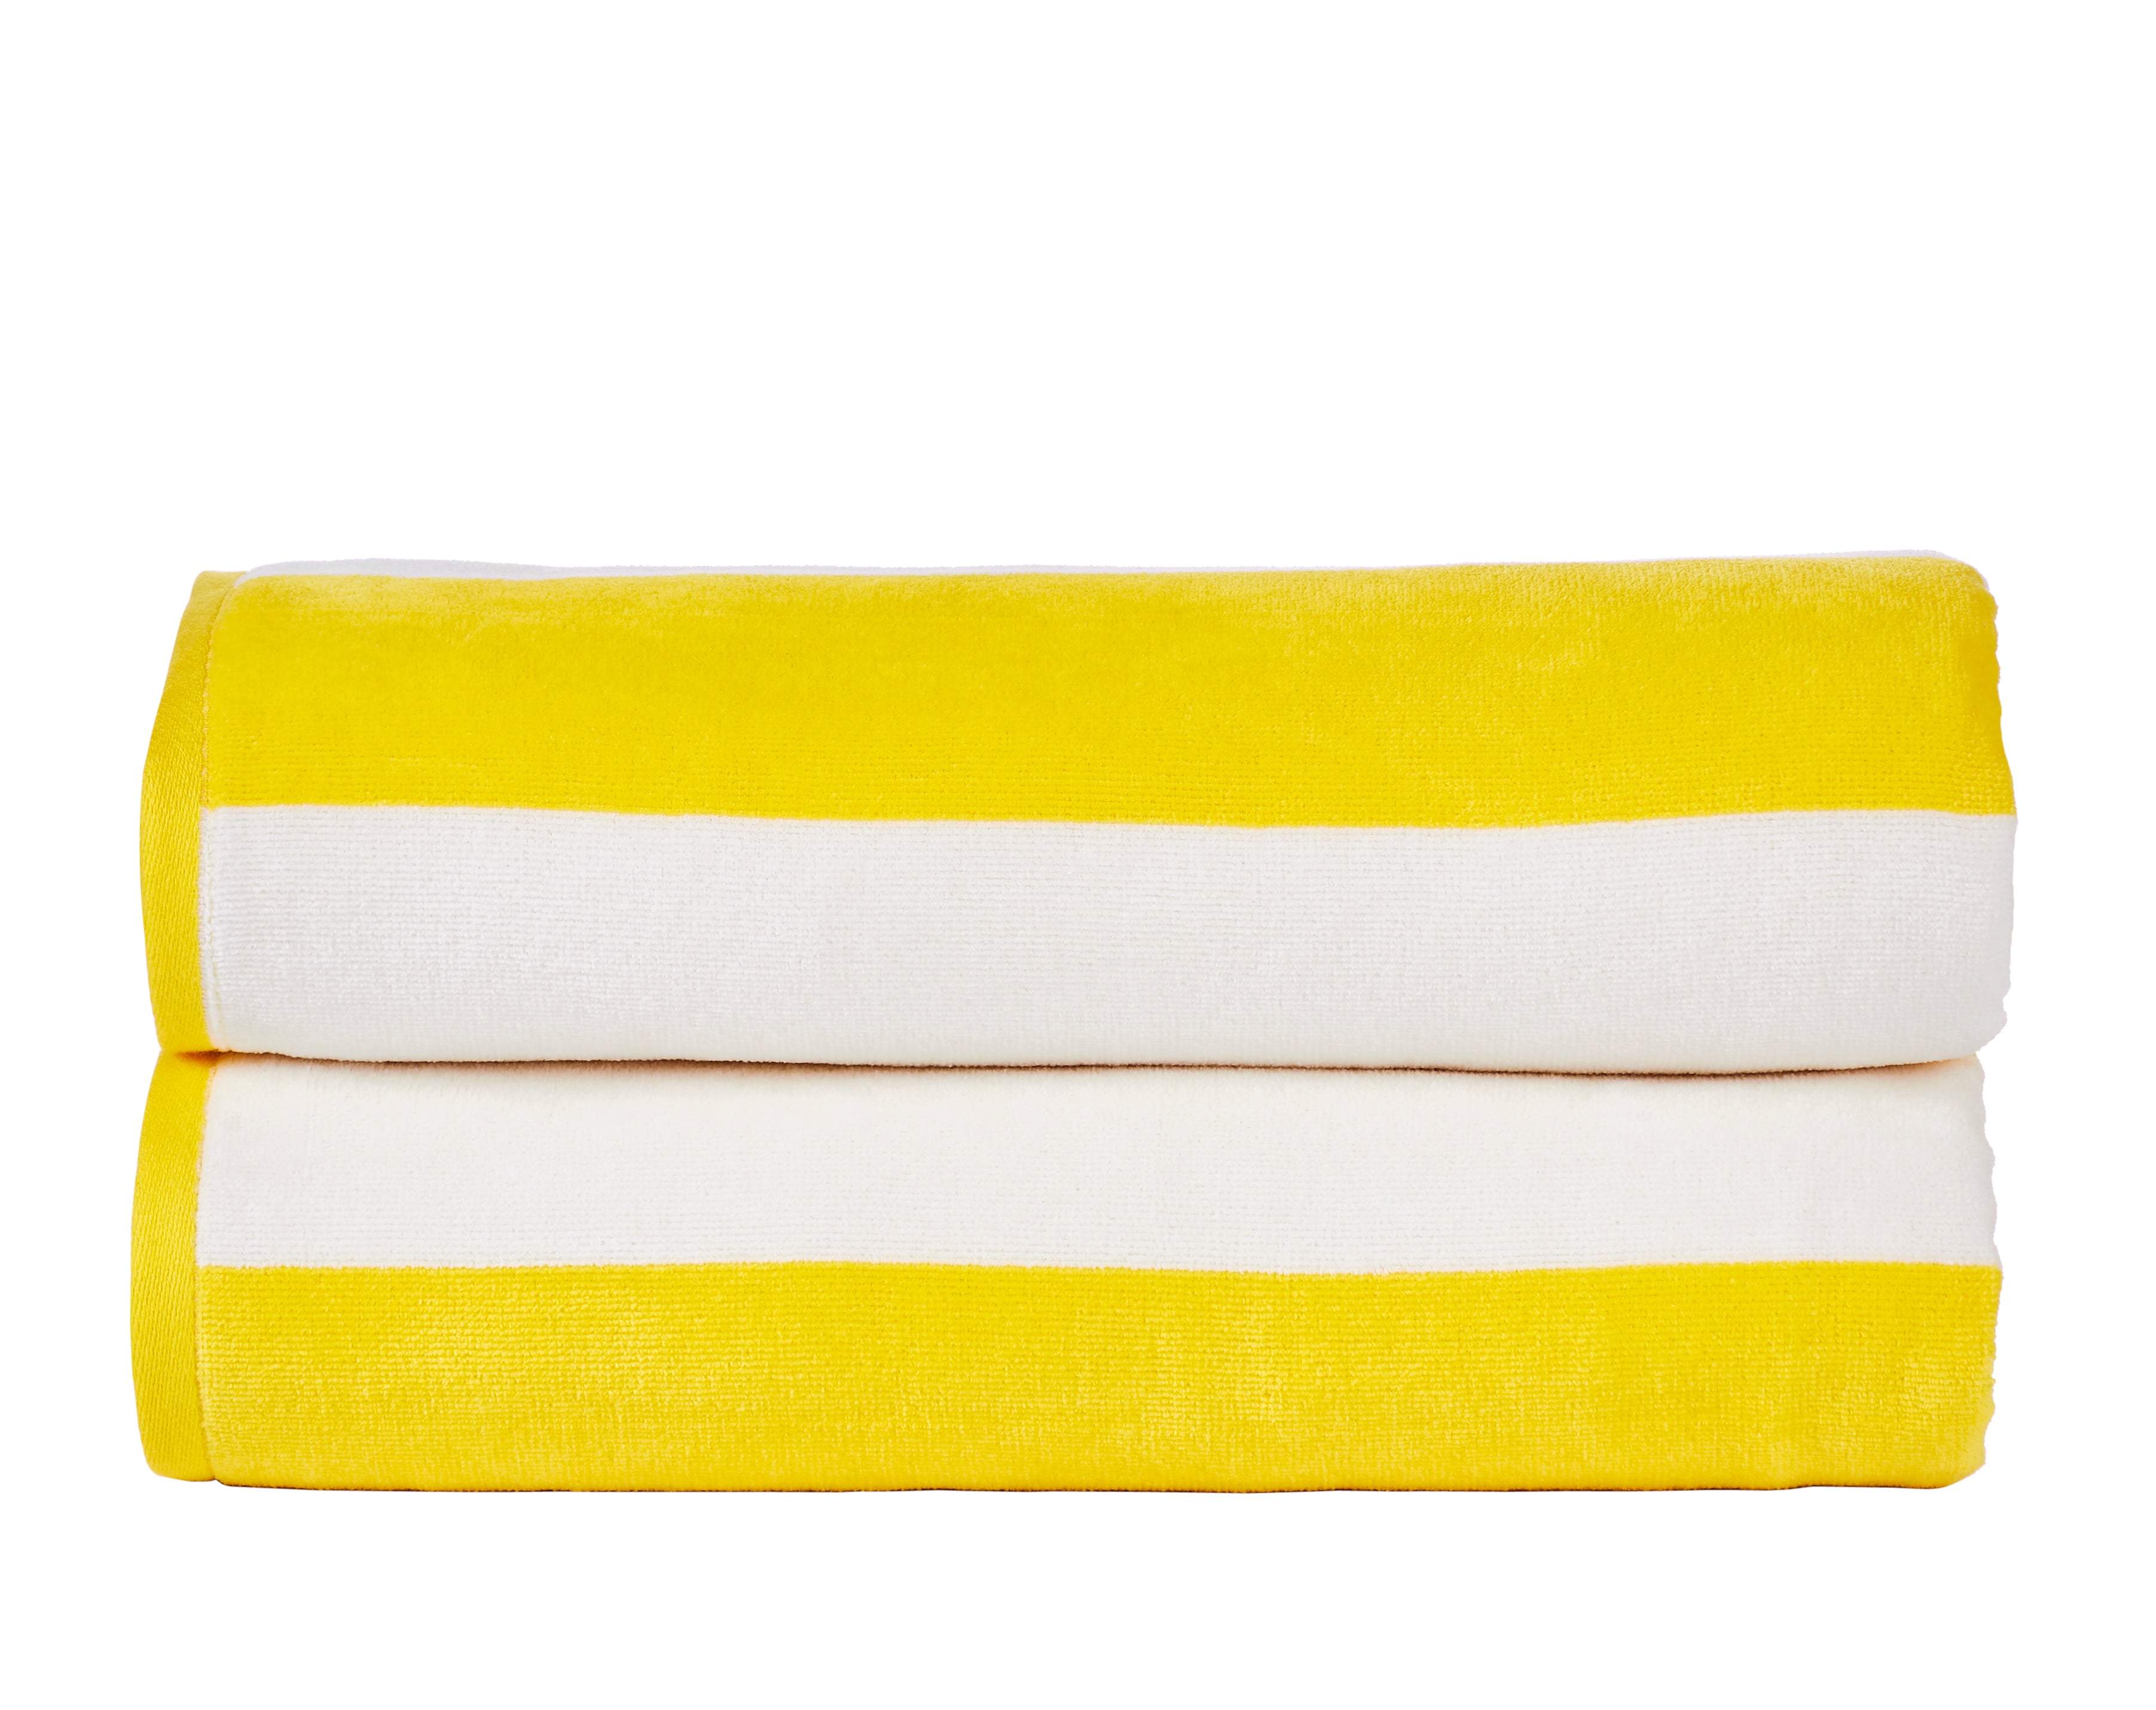 30x60 - YELLOW Beach Towel Terry Velour 100% Cotton